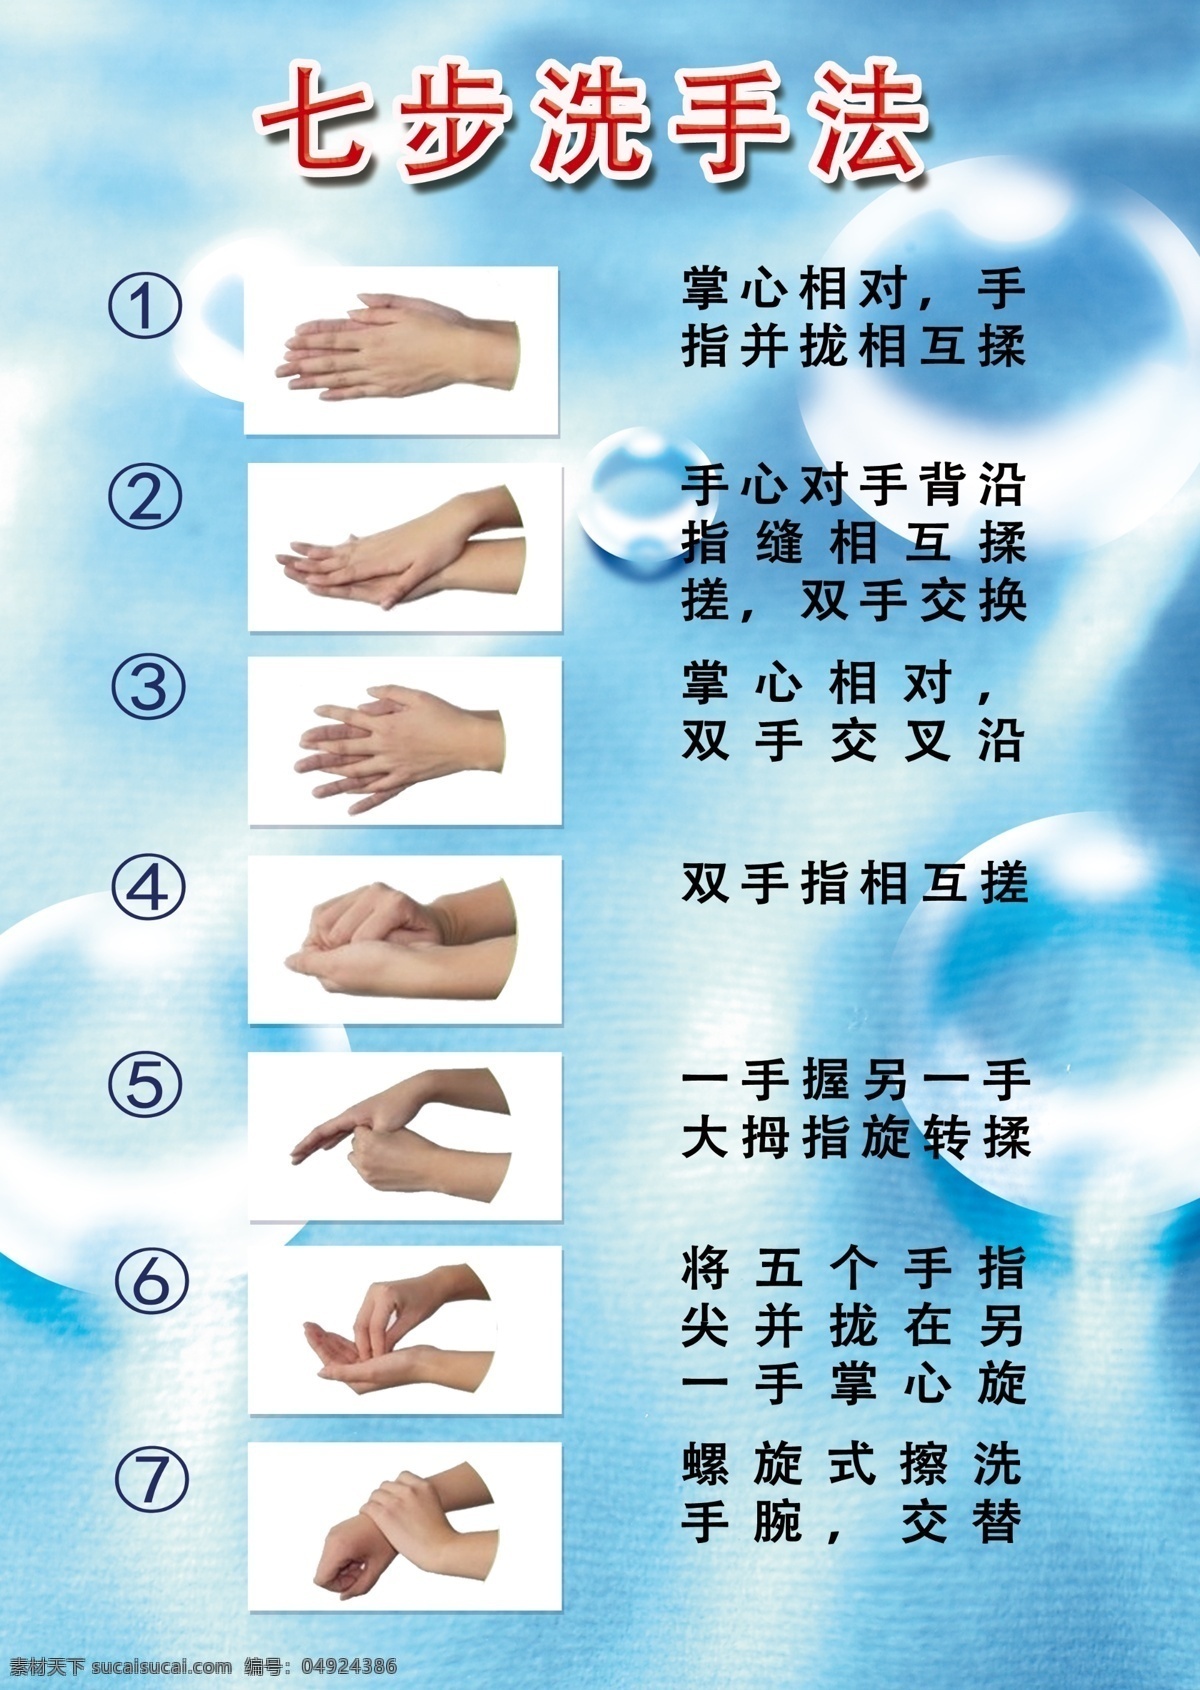 七步洗手法 洗手 七步 卫生 干净 手 生活百科 医疗保健